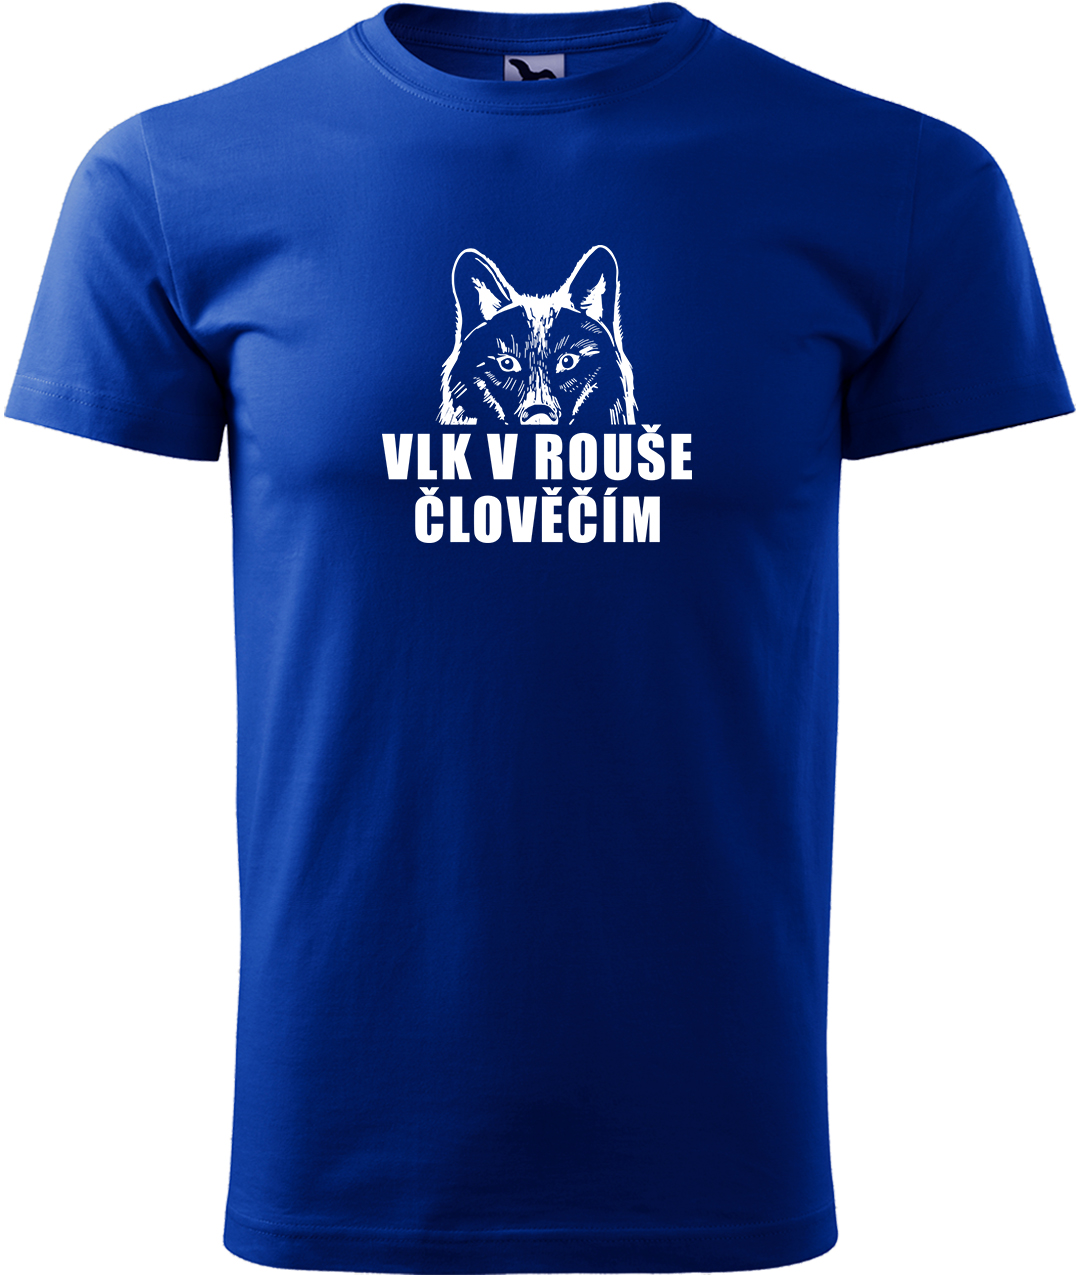 Pánské tričko s vlkem - Vlk v rouše člověčím Velikost: L, Barva: Královská modrá (05), Střih: pánský